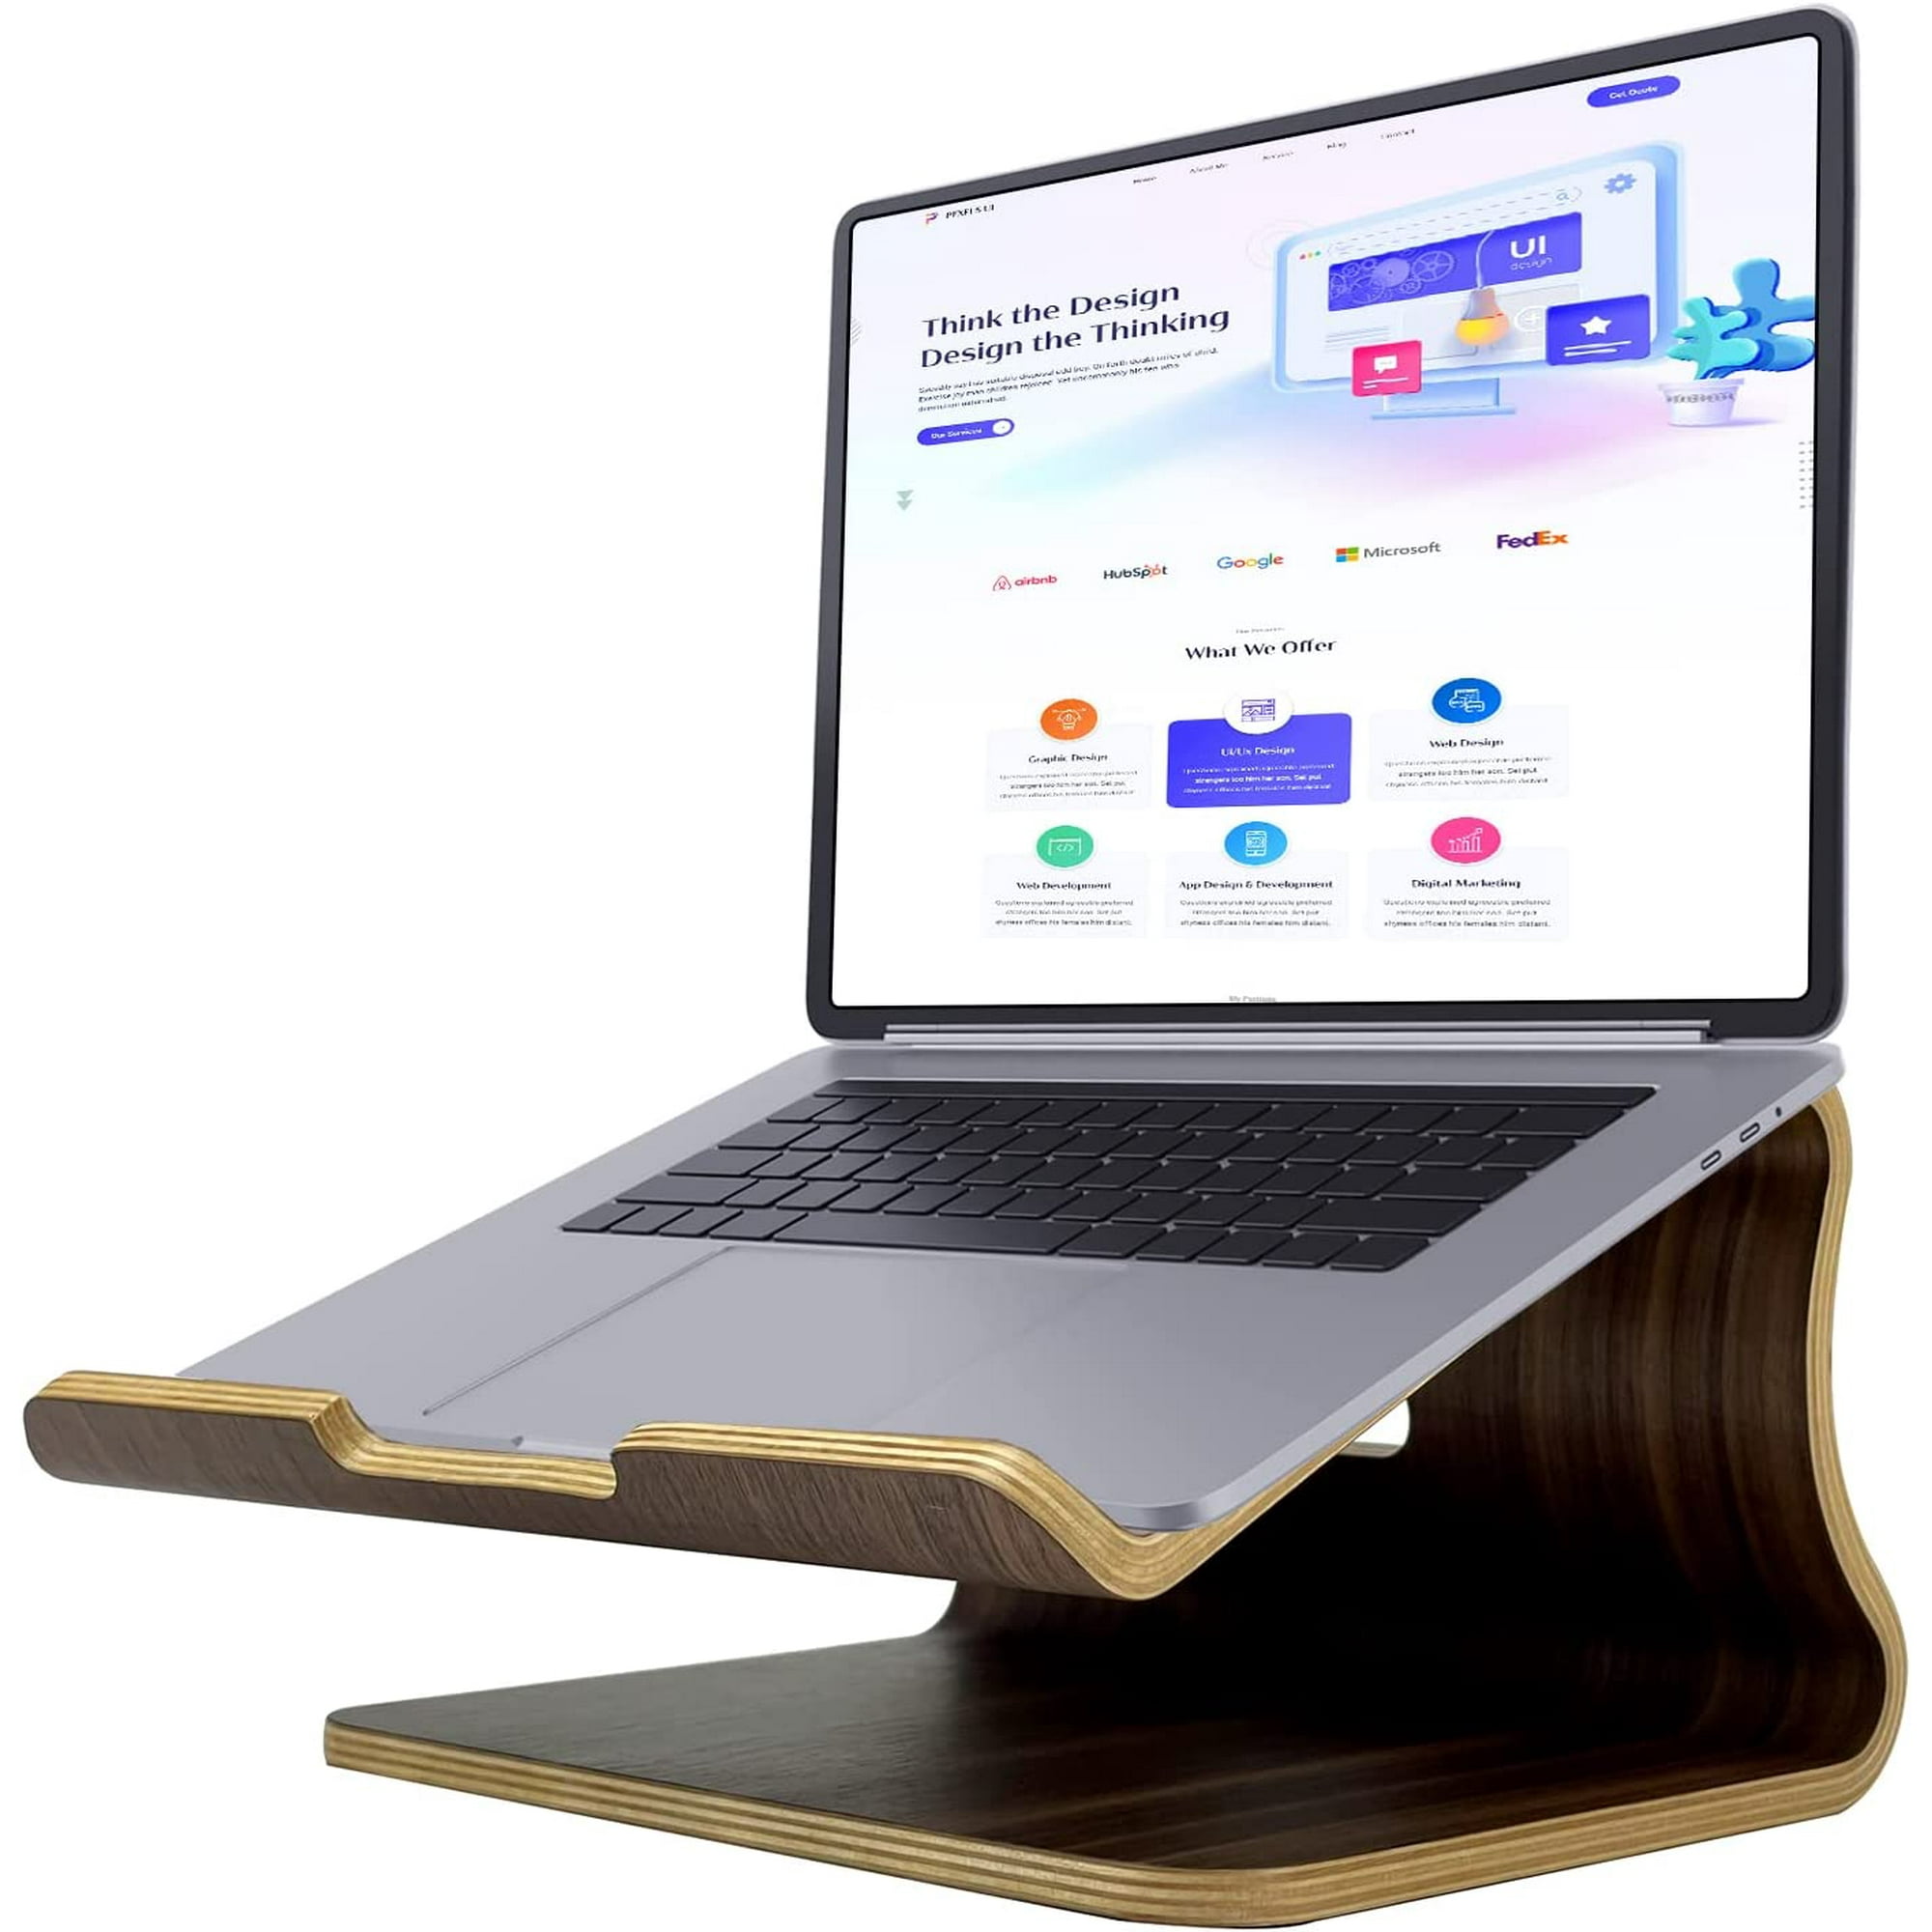 Soporte para ordenador portátil, soporte de madera para ordenador portátil,  soporte de madera para ordenador portátil para MacBook Air / Pro, Lenovo,  Dell, HP y otros ordenadores portátiles